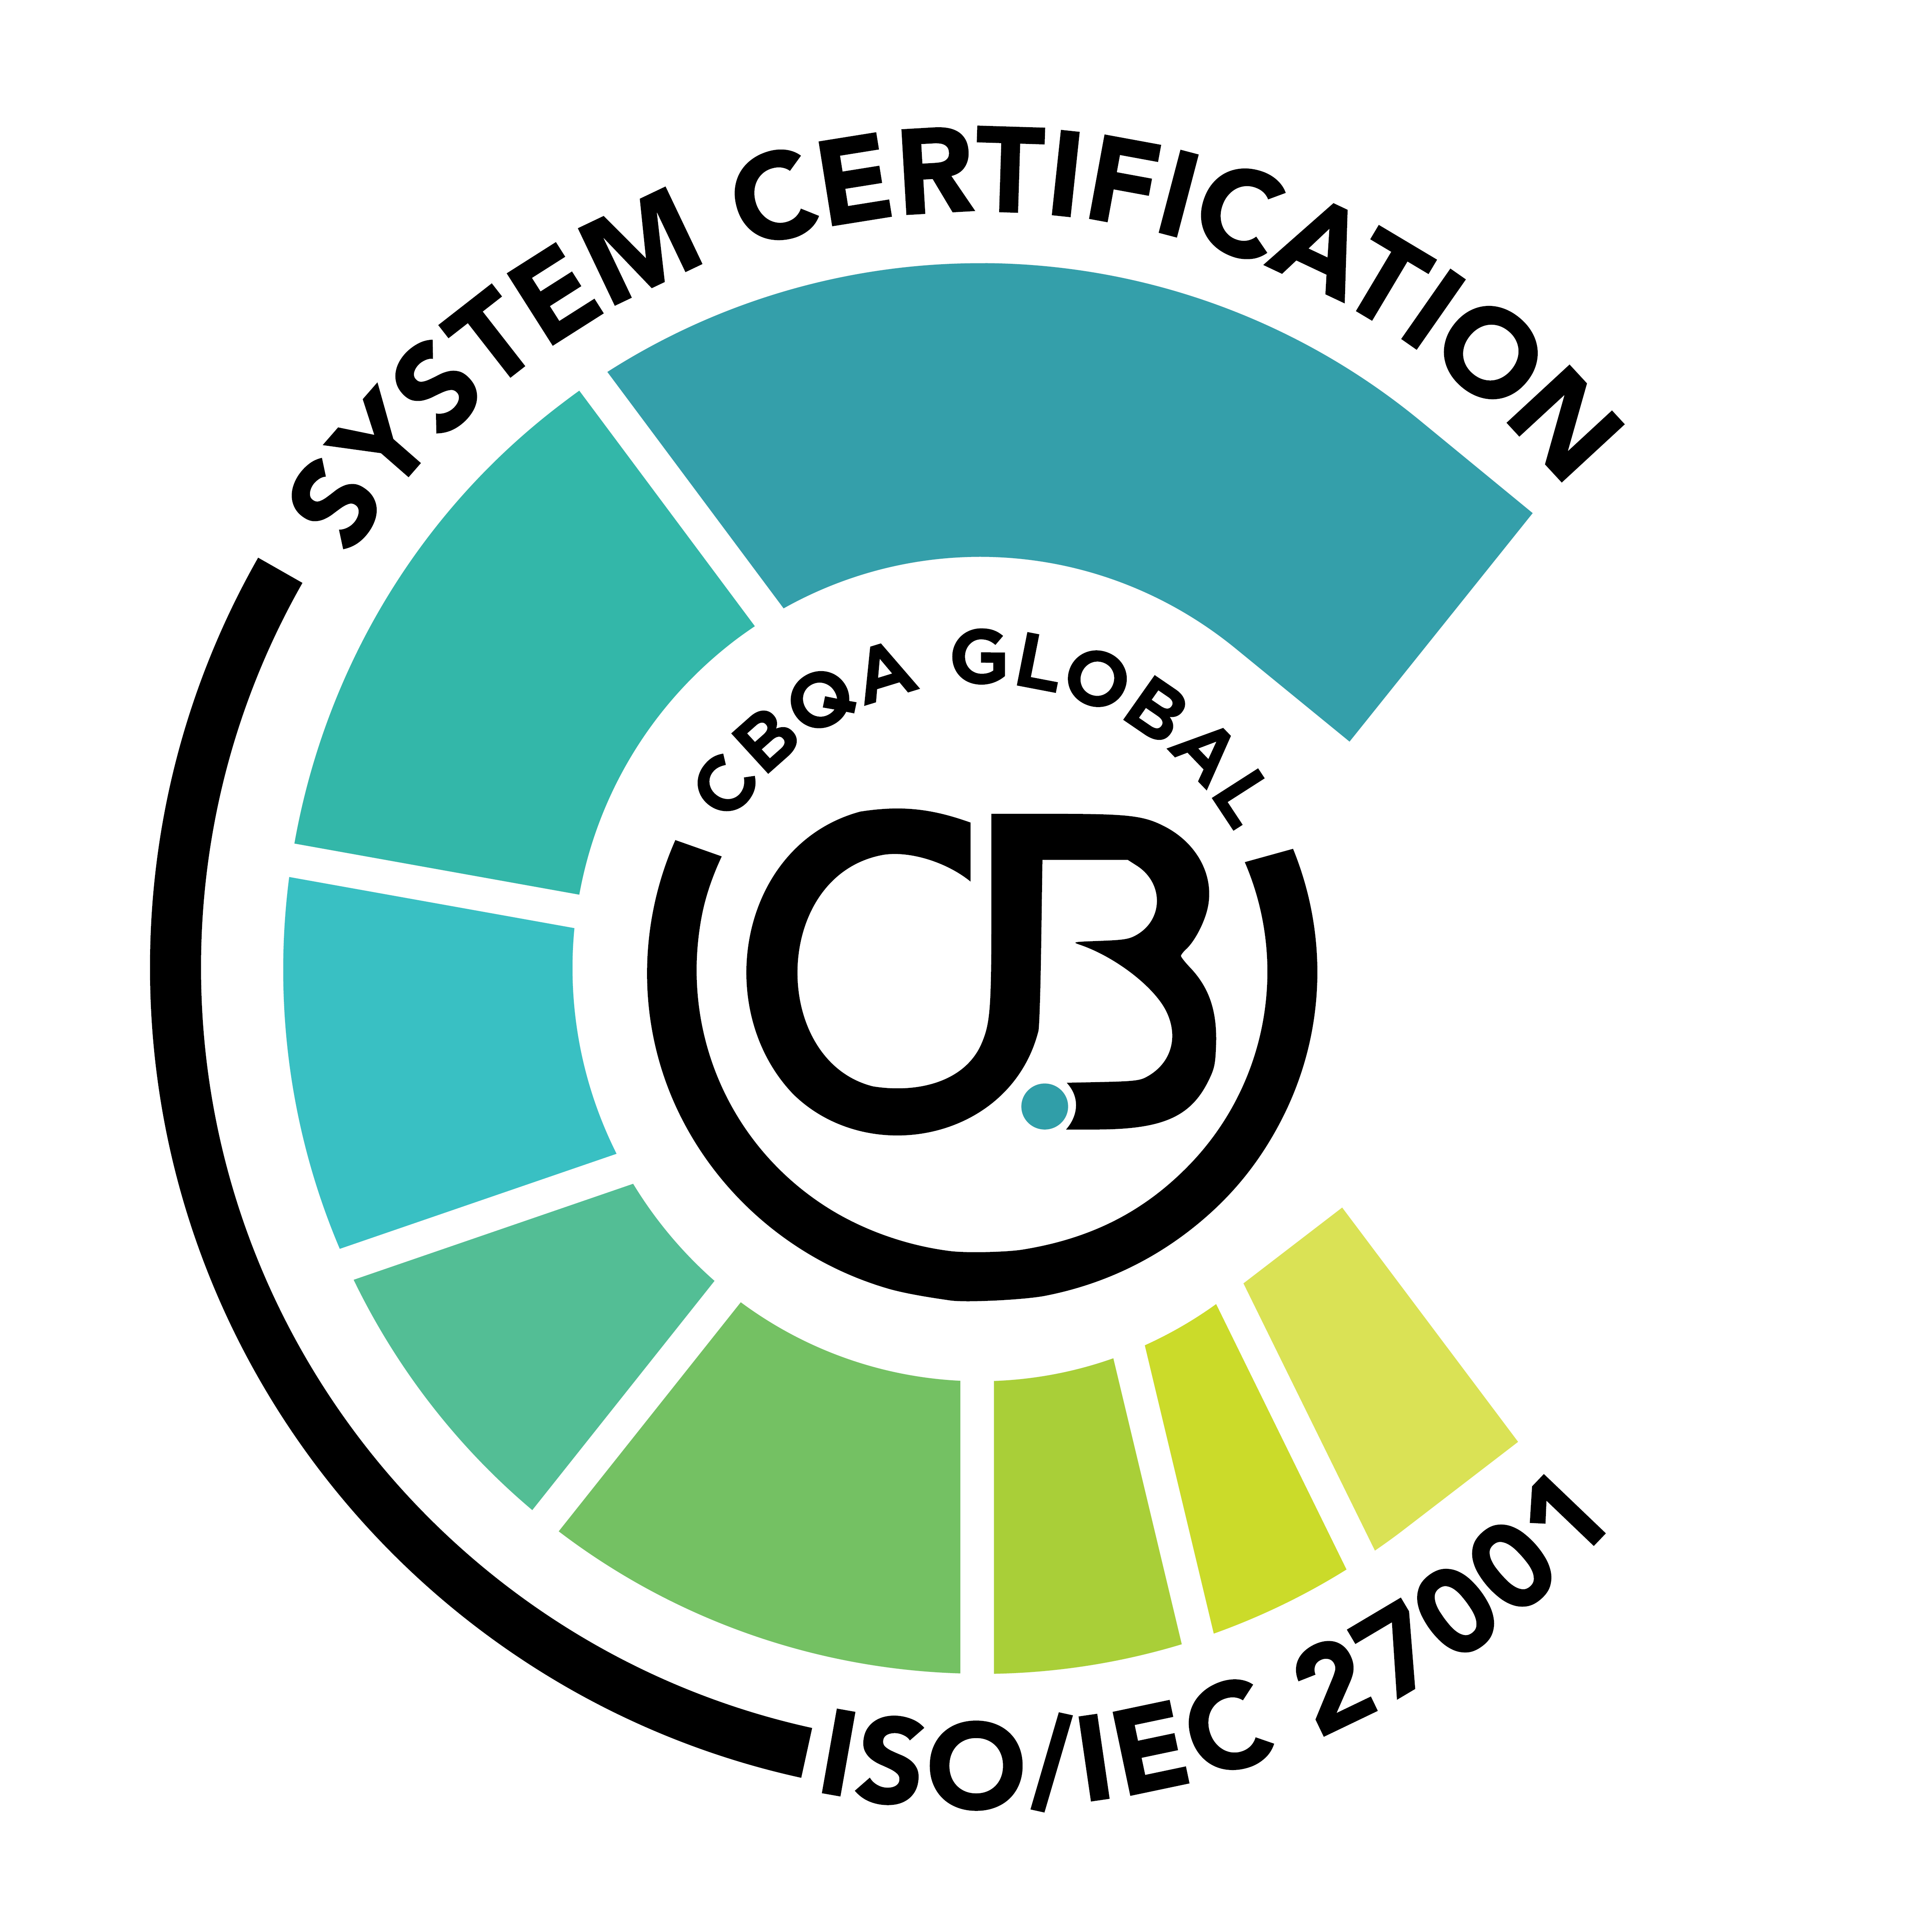 Logo Sertifikat ISO 270001